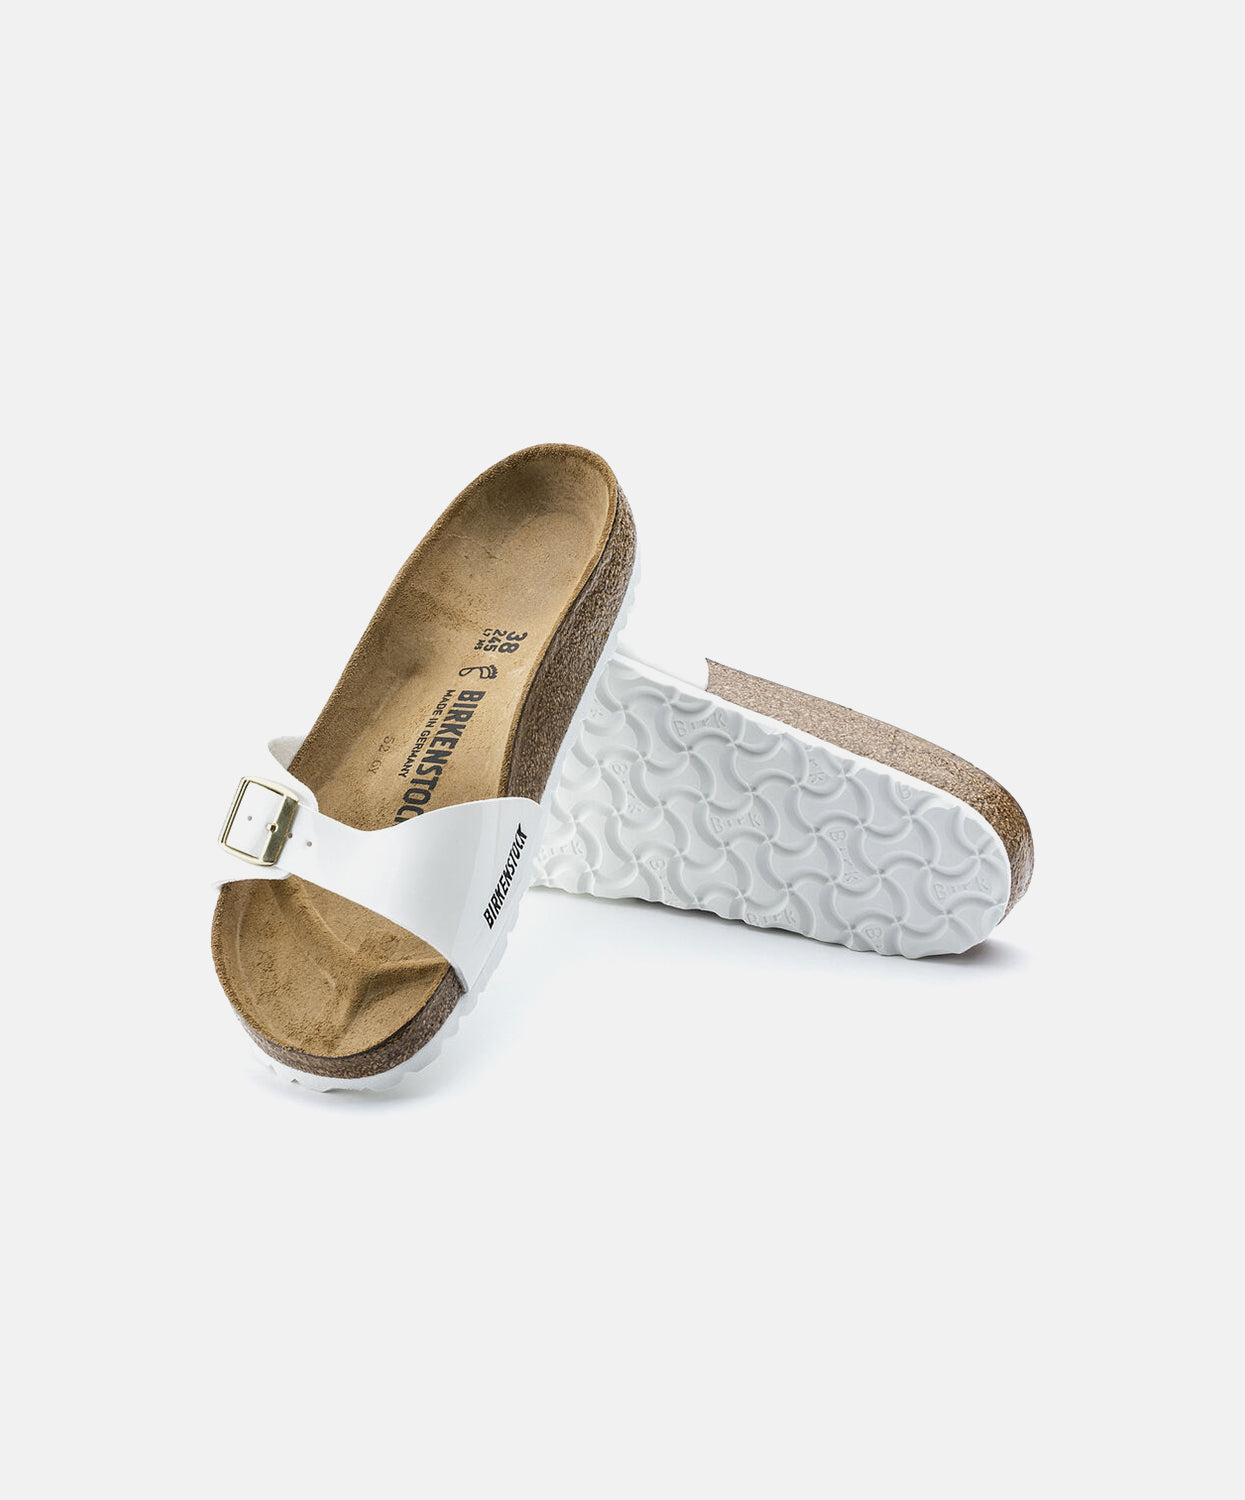 Verhuizer Het apparaat verdediging Birkenstock Madrid Birko-Flor White Patent Sandals | Free Shipping – Bstore